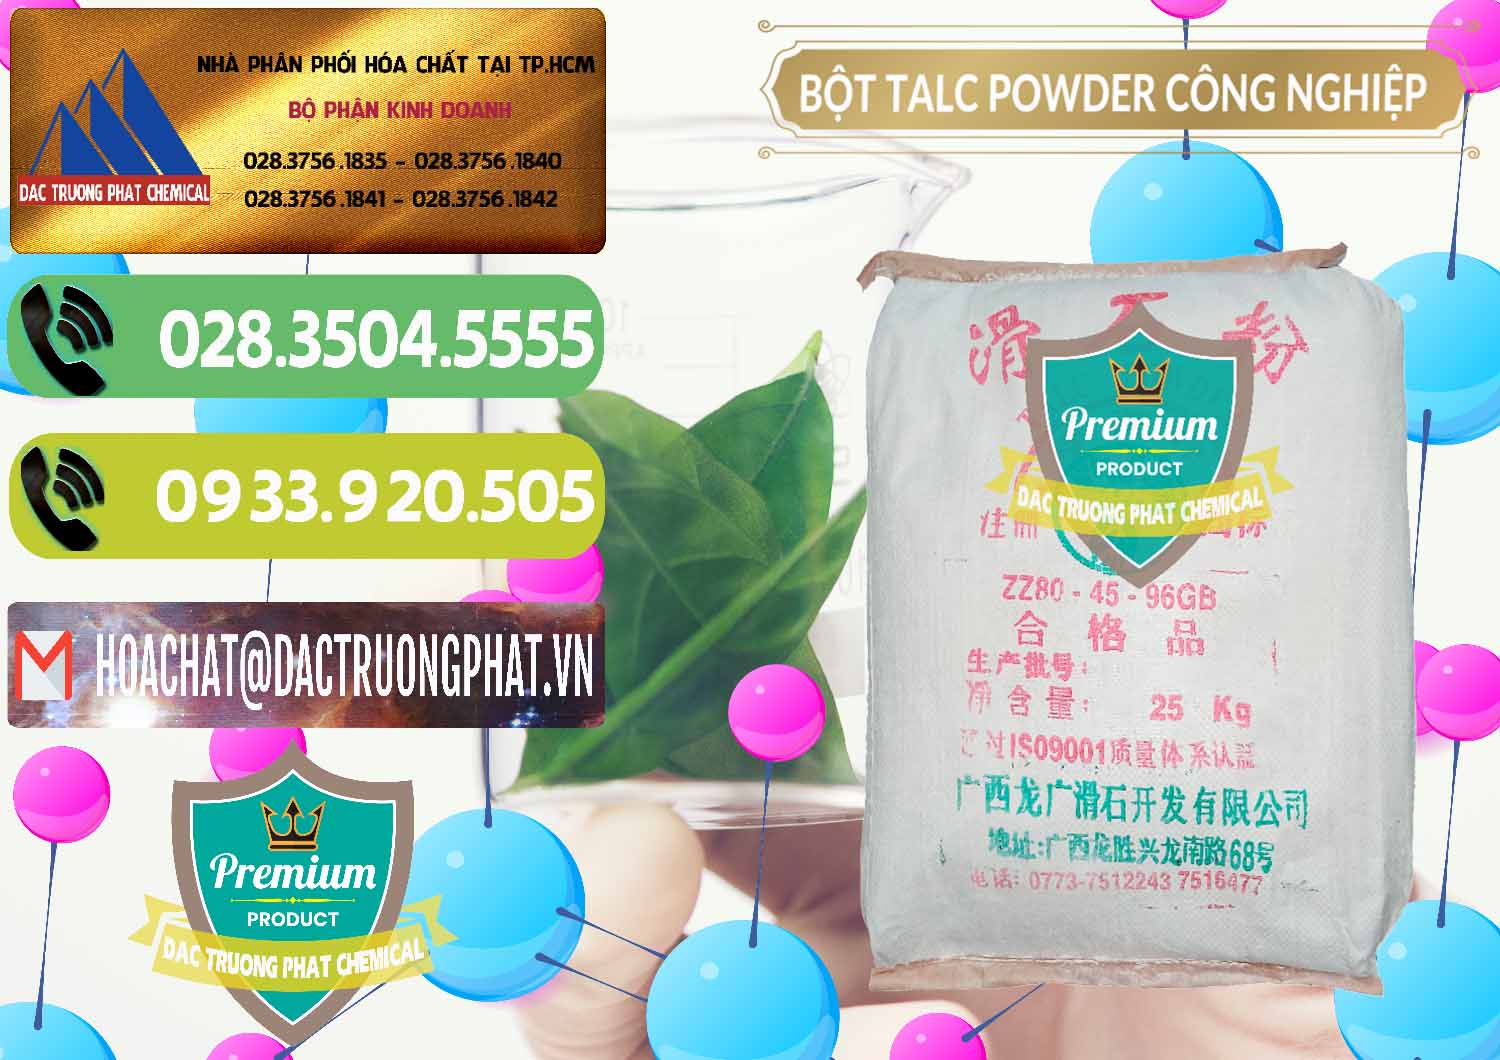 Bán và cung ứng Bột Talc Powder Công Nghiệp Trung Quốc China - 0037 - Cung cấp - kinh doanh hóa chất tại TP.HCM - hoachatmientay.vn